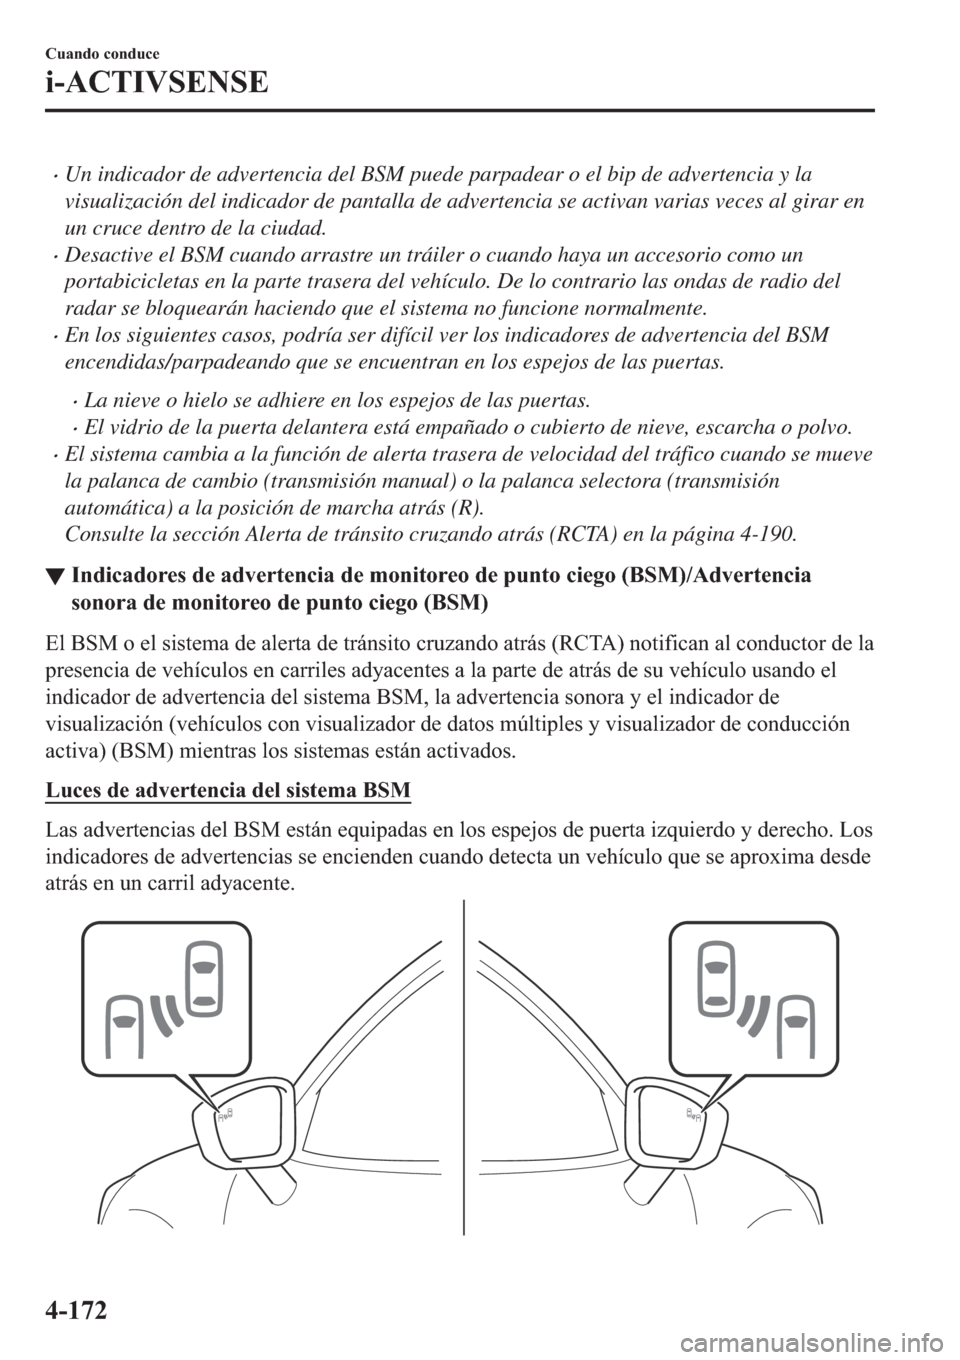 MAZDA MODEL 6 2019  Manual del propietario (in Spanish) �xUn indicador de advertencia del BSM puede parpadear o el bip de advertencia y la
visualización del indicador de pantalla de advertencia se activan varias veces al girar en
un cruce dentro de la ciu